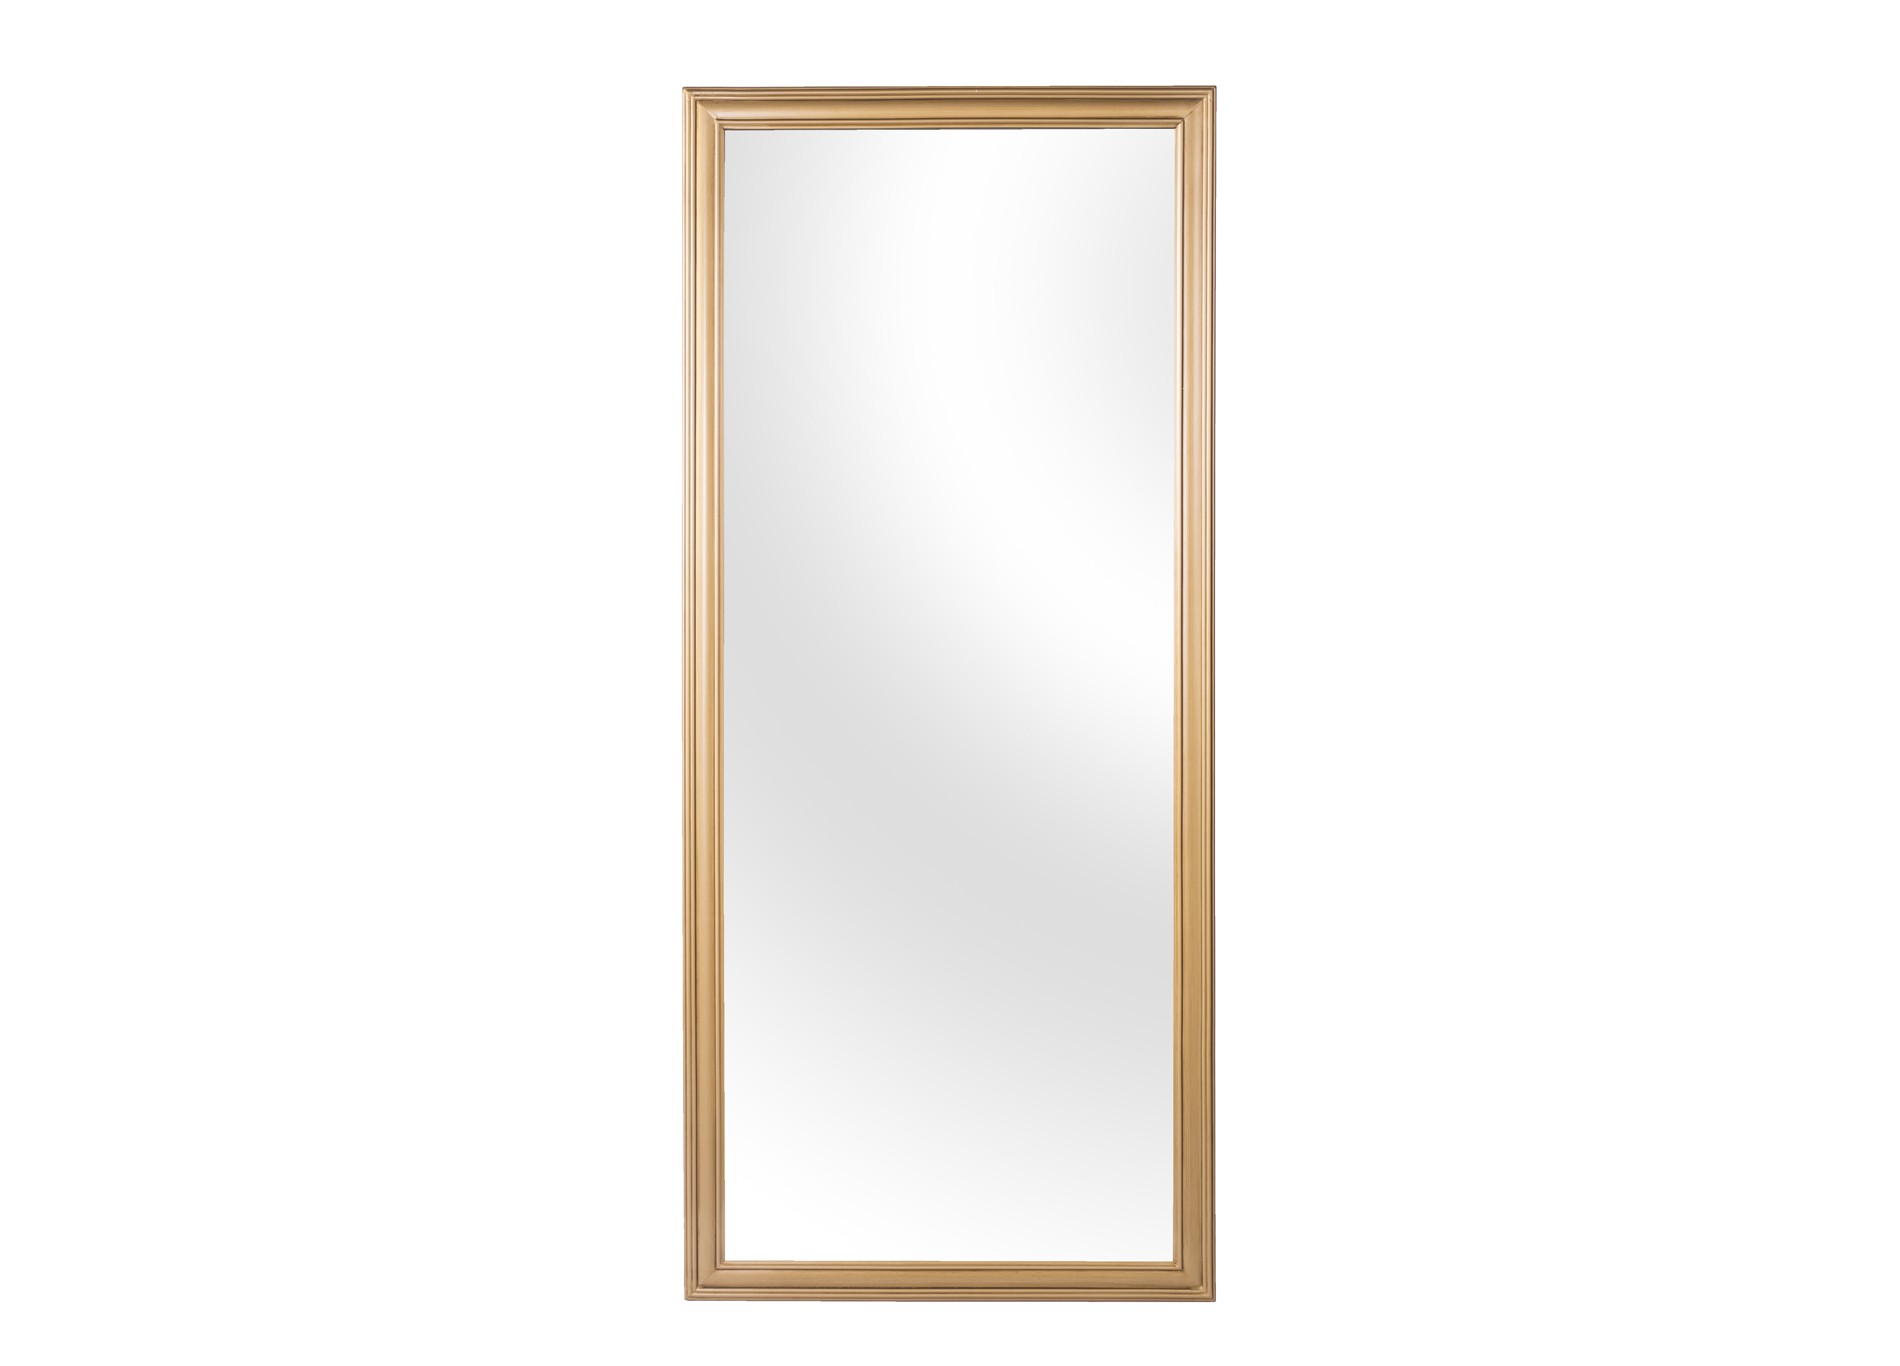 Зеркало от производителя спб недорого. Зеркало арт.13tm171pm. Зеркало настенное в раме Liberty (Либерти) Art-zerkalo. Зеркало 329ш золото, с полкой. Прямоугольное зеркало в деревянной раме.